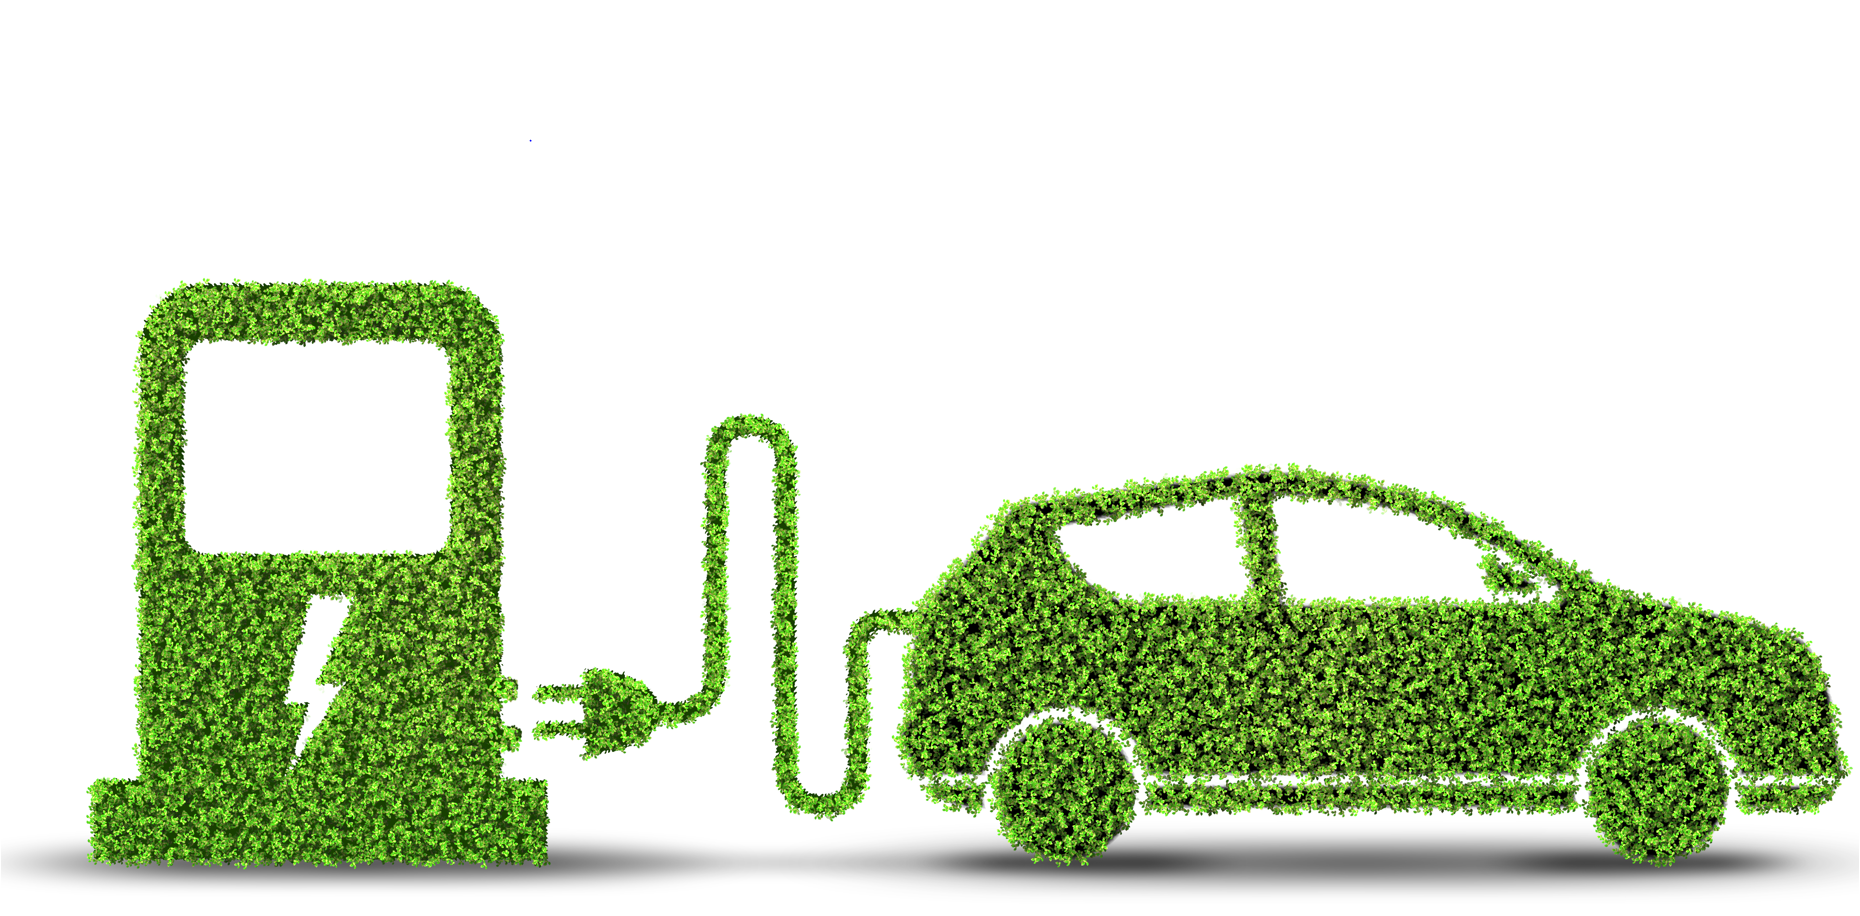 Innovationen in Energiefragen und Lifestyle durch Elektrofahrzeuge